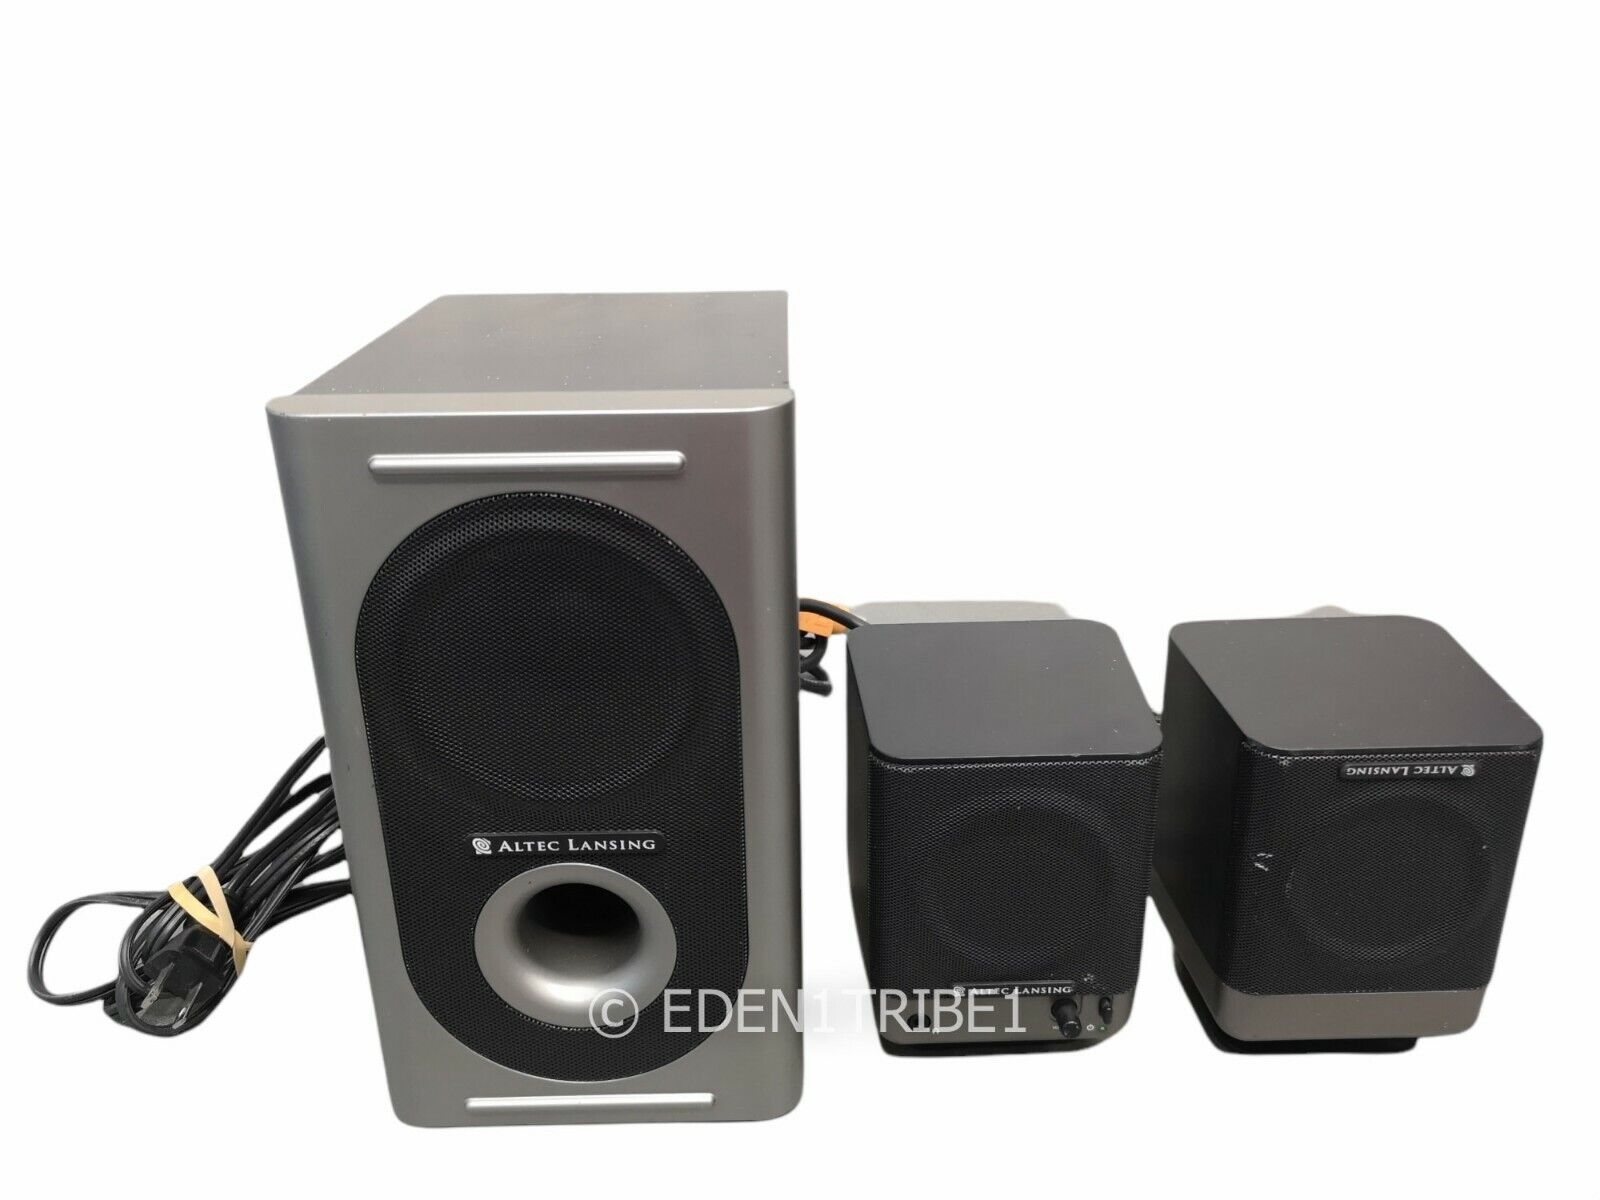 Altec Lansing 221 Stereo Media Speaker System